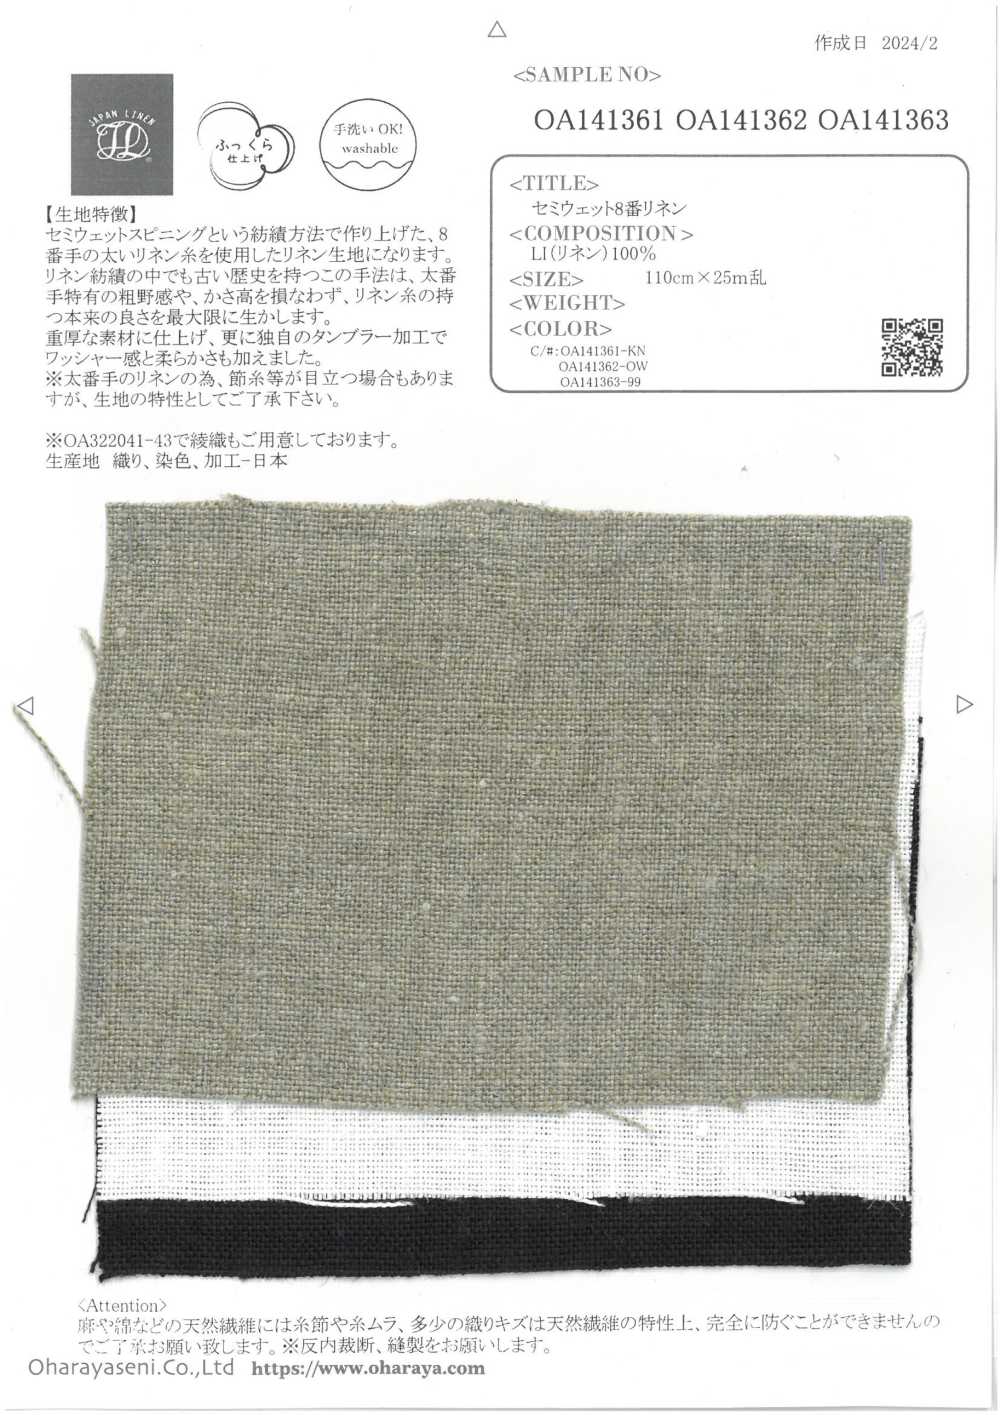 OA141363 Lin N°8 Semi-humide[Fabrication De Textile] Oharayaseni